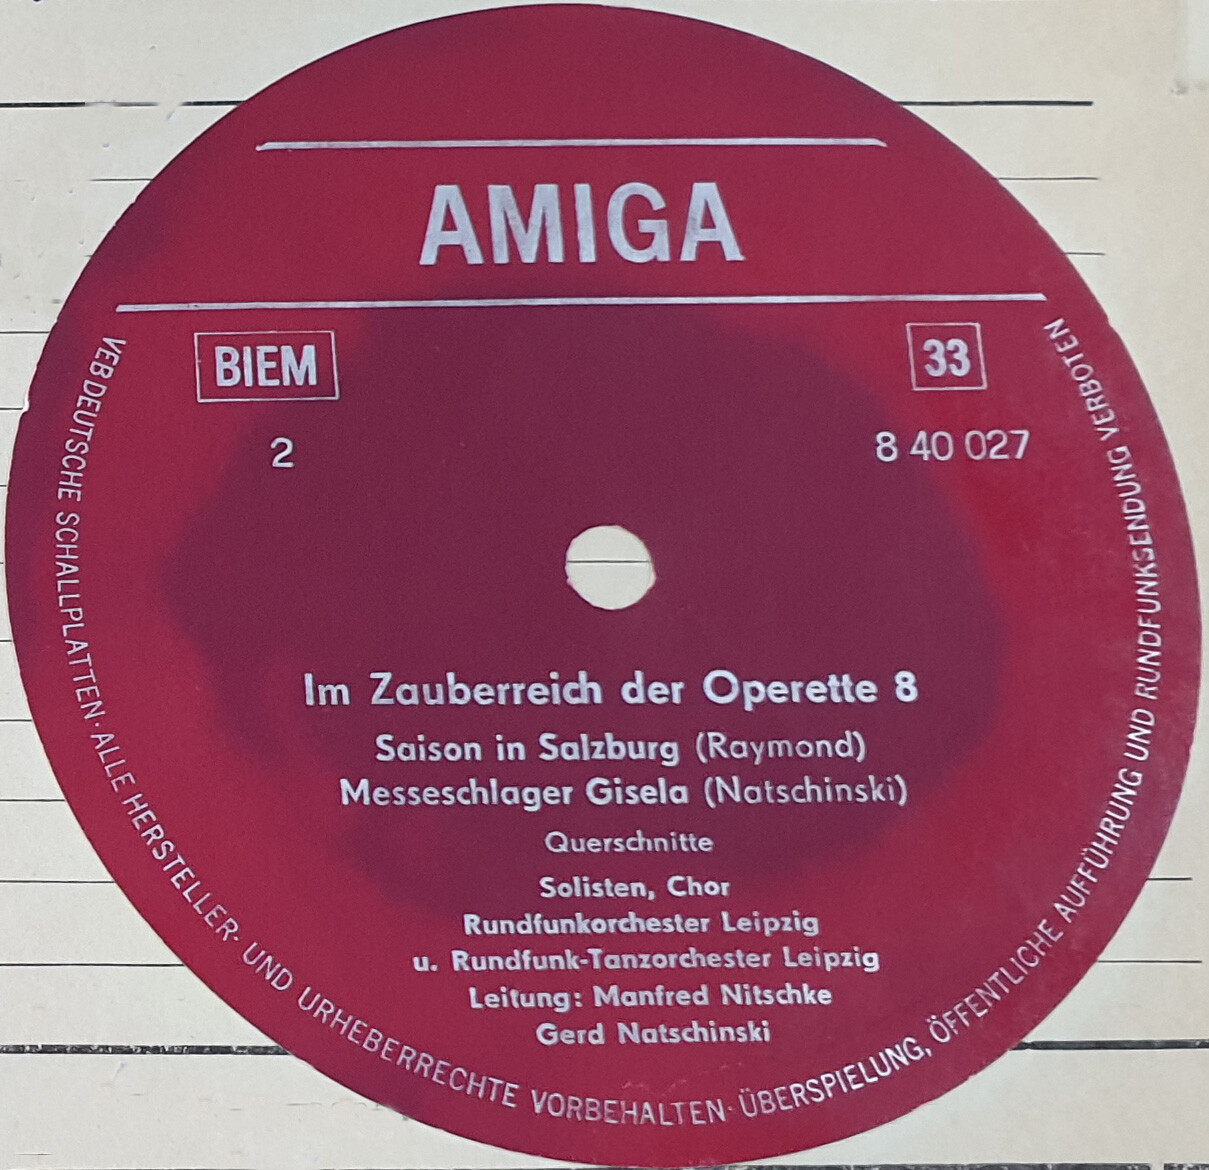 Im Zauberreich der Operette 8 [по заказу немецкой фирмы AMIGA 8 40 027]